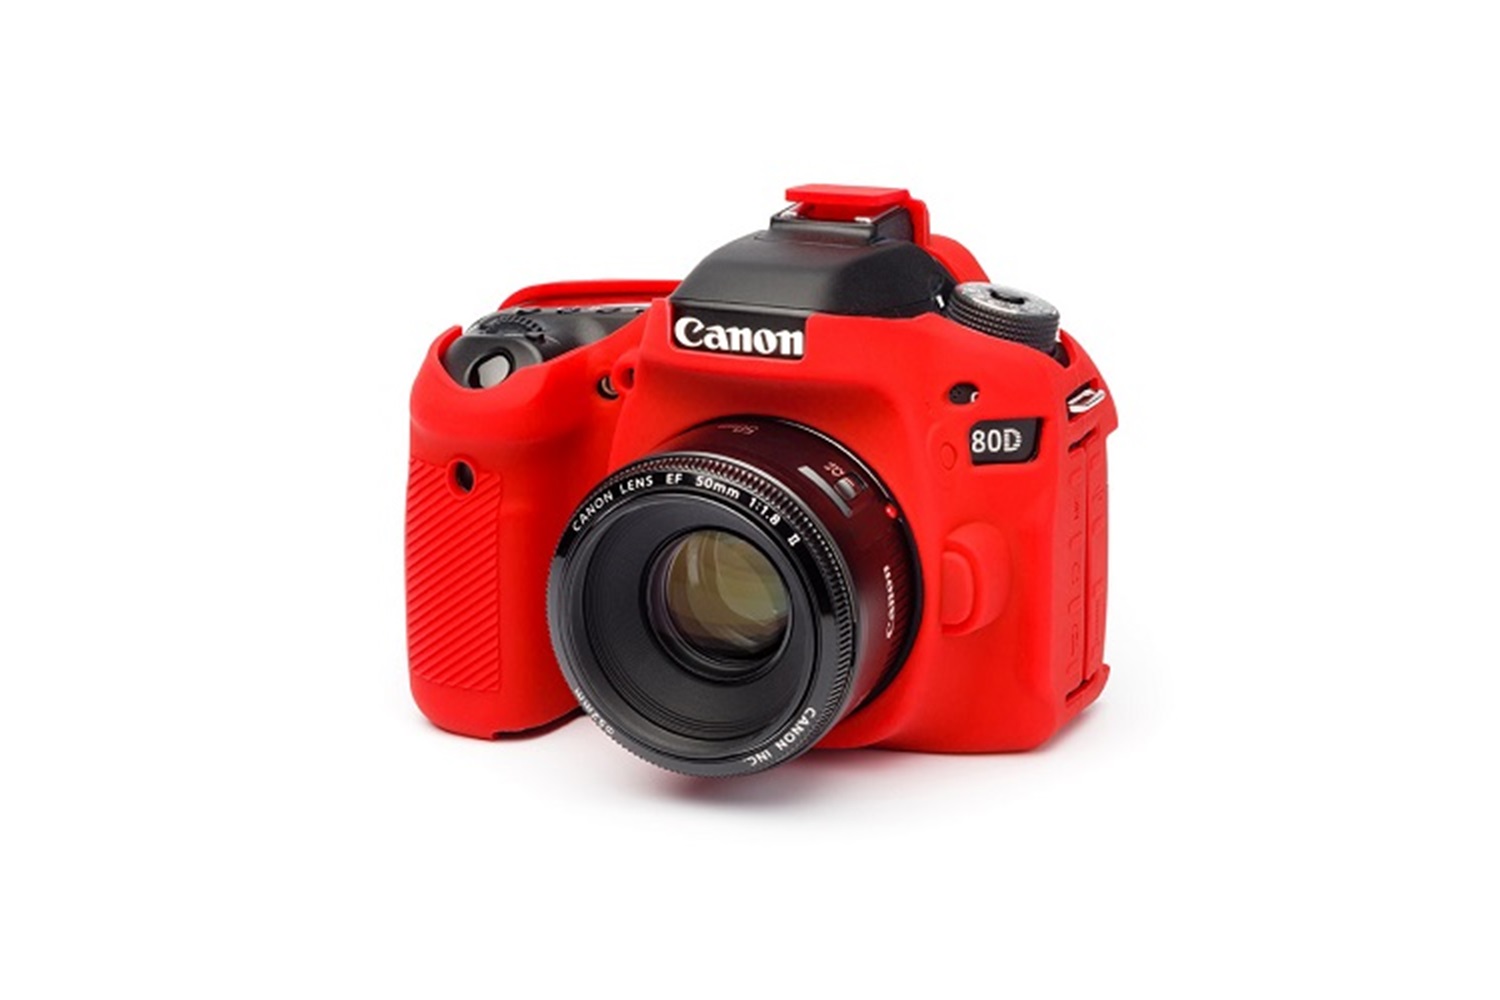 Easycover Canon 80D Silikon Kılıf Kırmızı